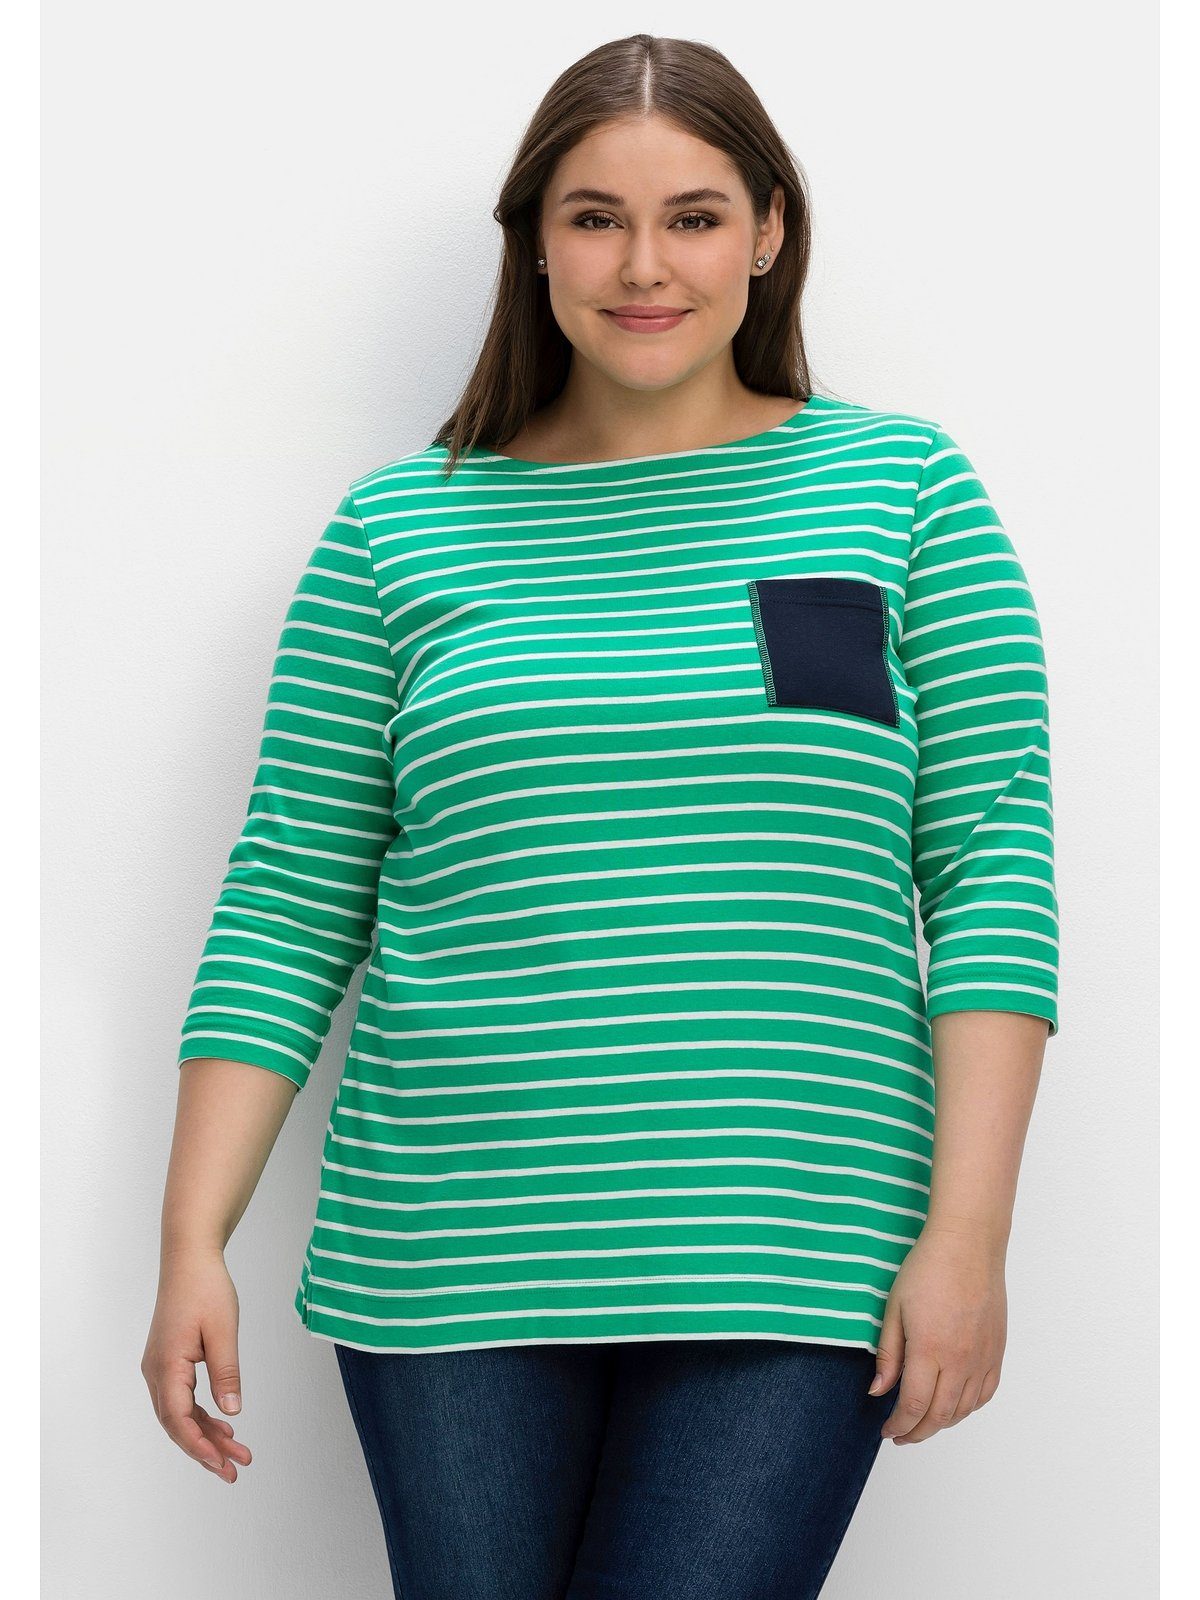 Verkauf zum niedrigsten Preis! Sheego 3/4-Arm-Shirt Größen mit kontrastfarbener Große Brusttasche